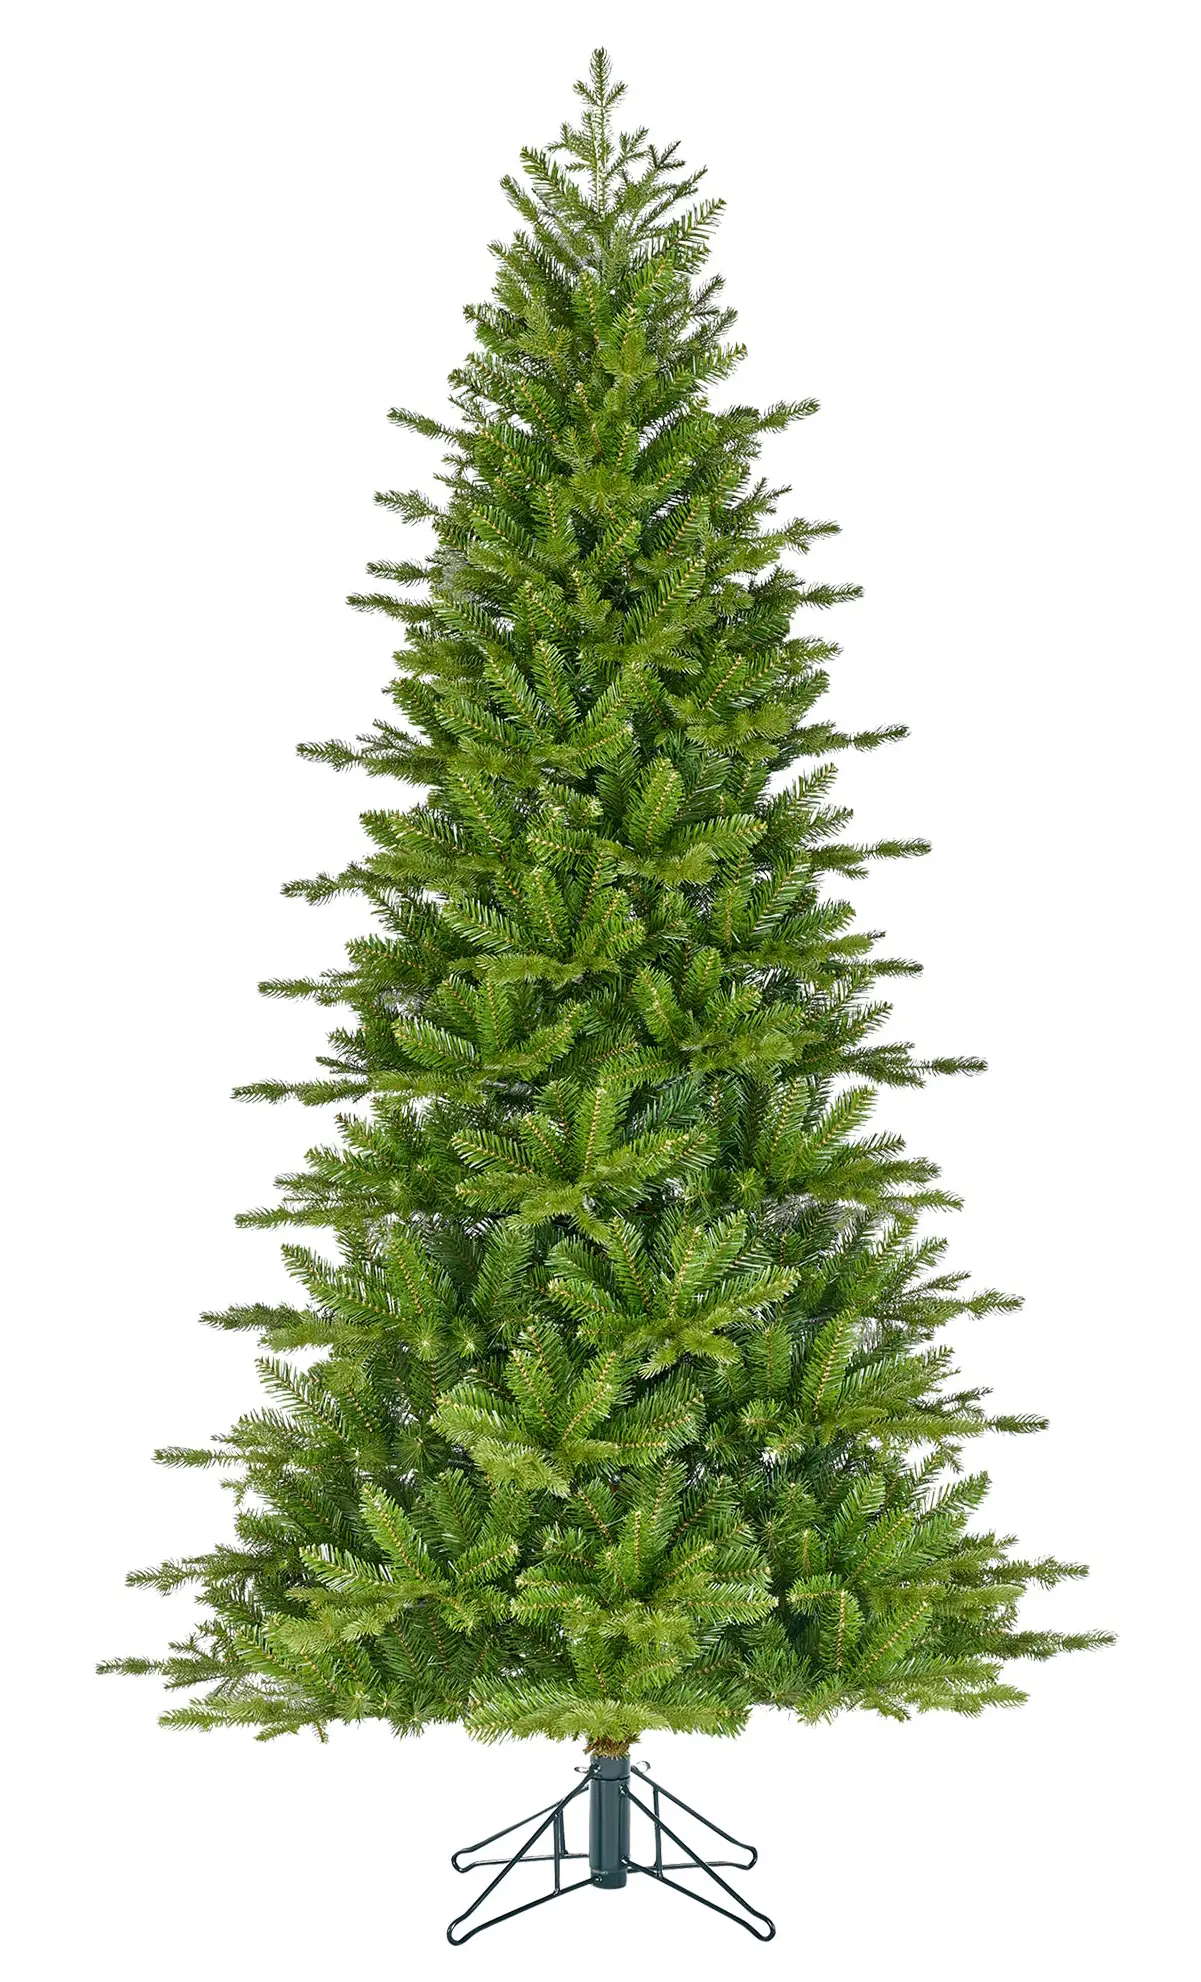 K眉nstlicher Weihnachtsbaum Scrub | Weihnachtsbäume